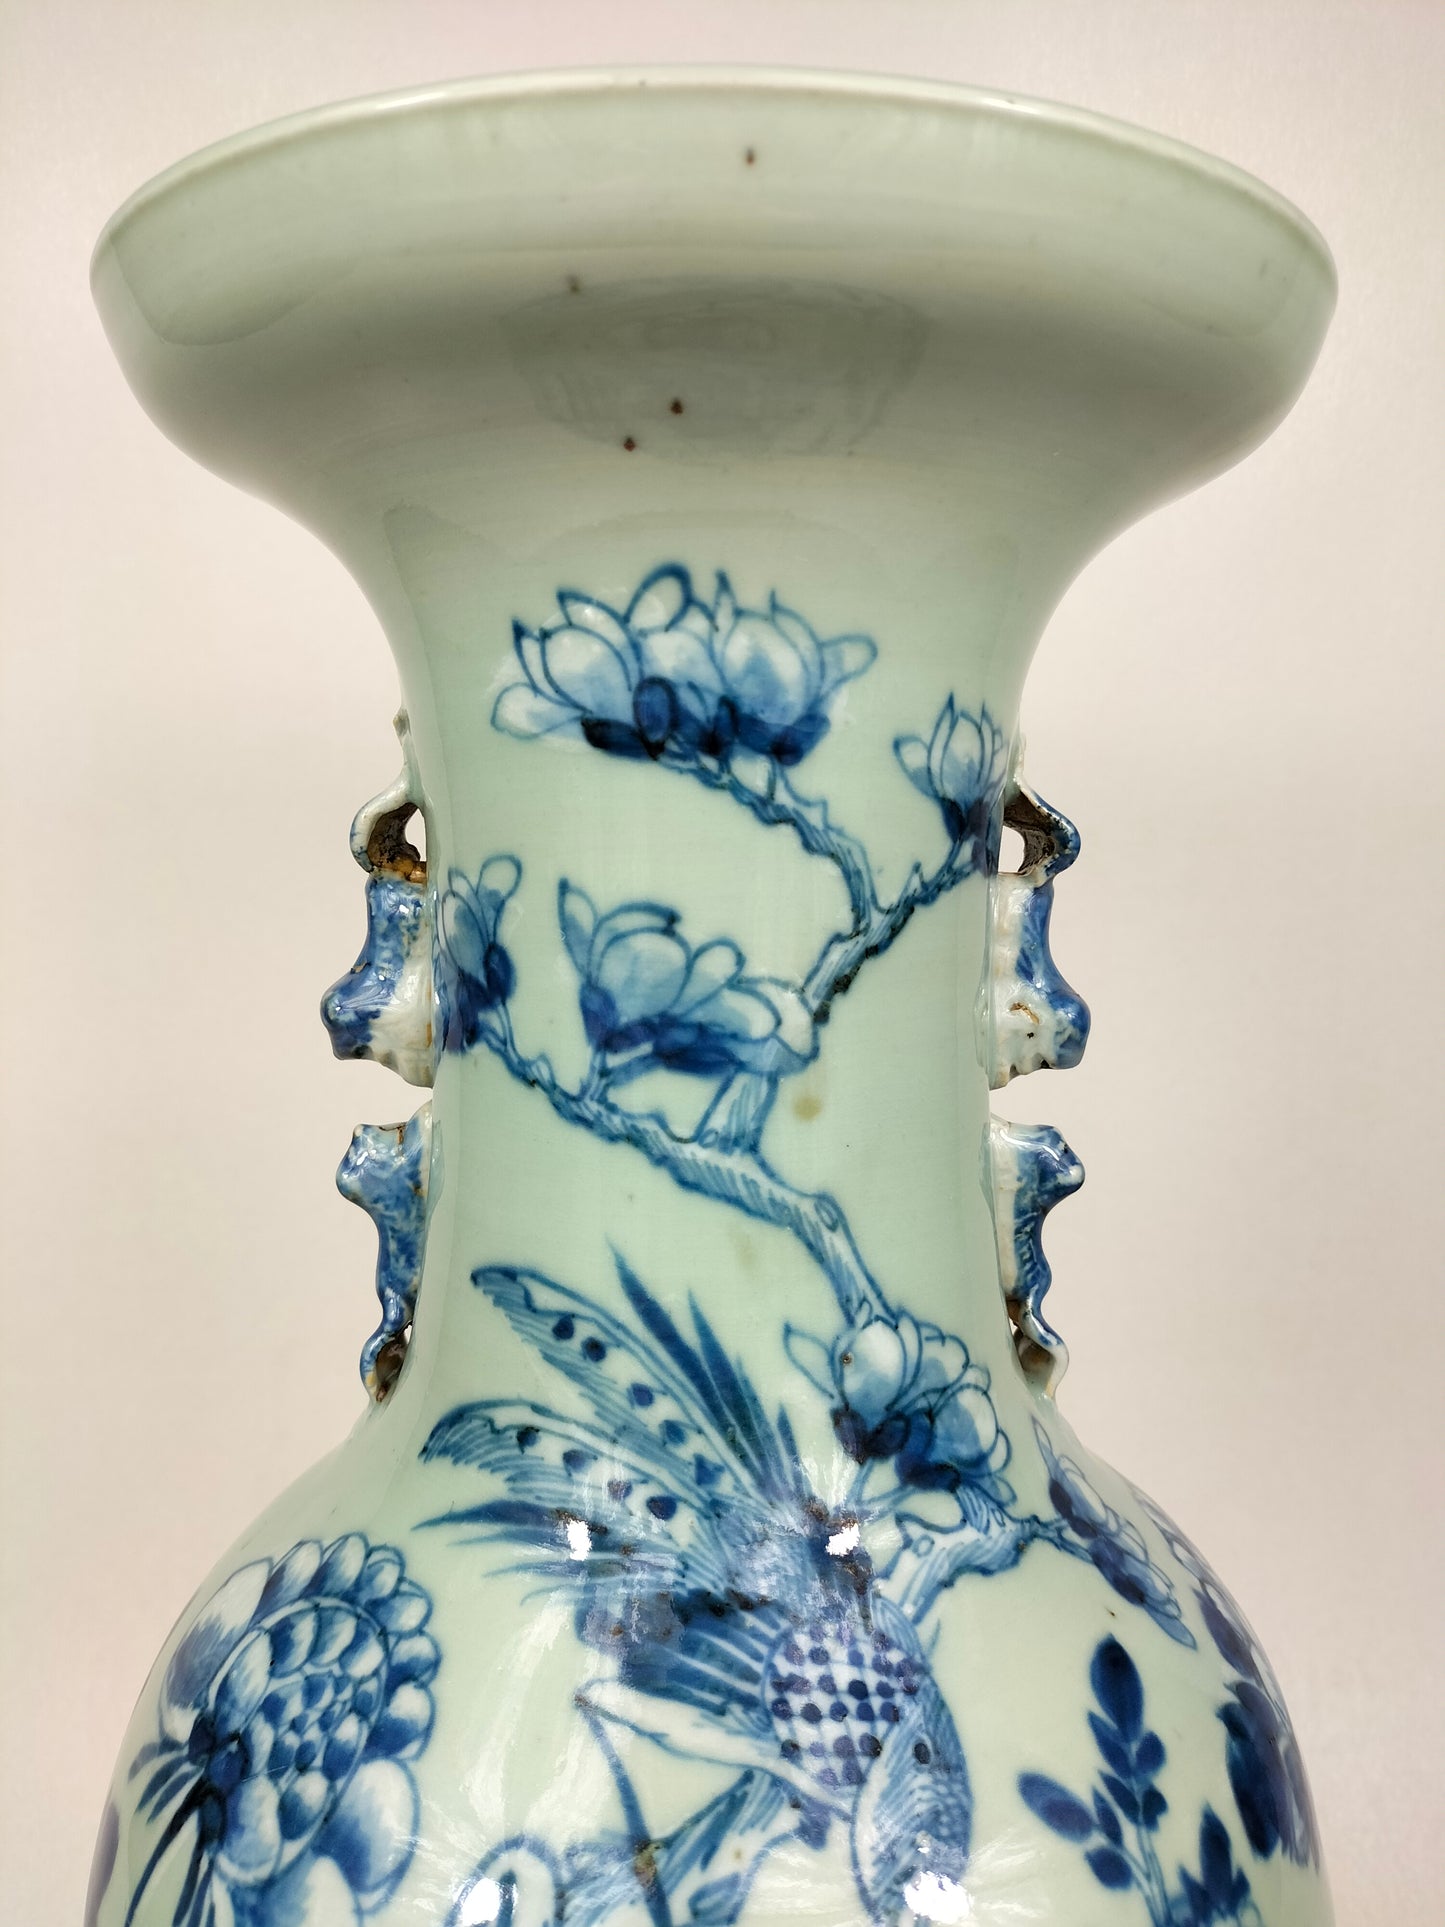 Grand vase antique chinois en céladon à décor d'oiseaux et de fleurs // Dynastie Qing - 19ème siècle